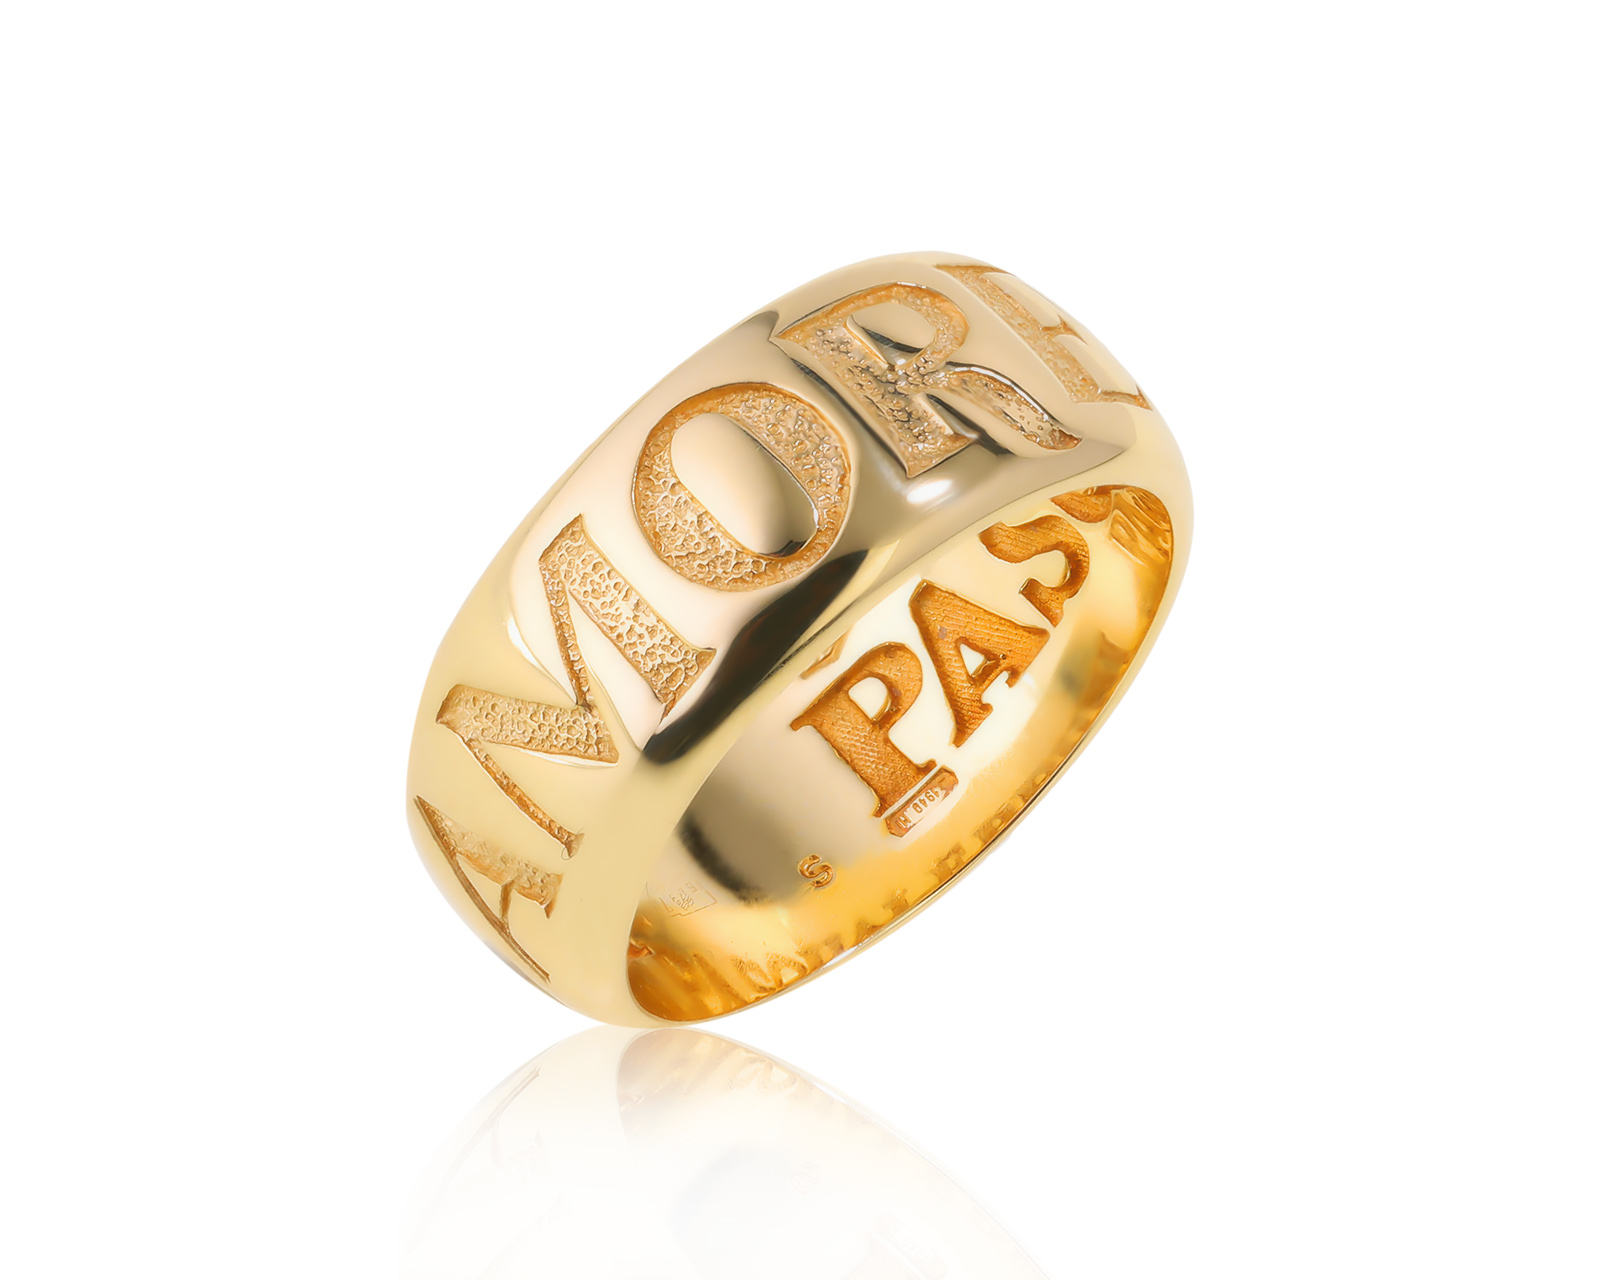 Оригинальное золотое кольцо Pasquale Bruni Amore